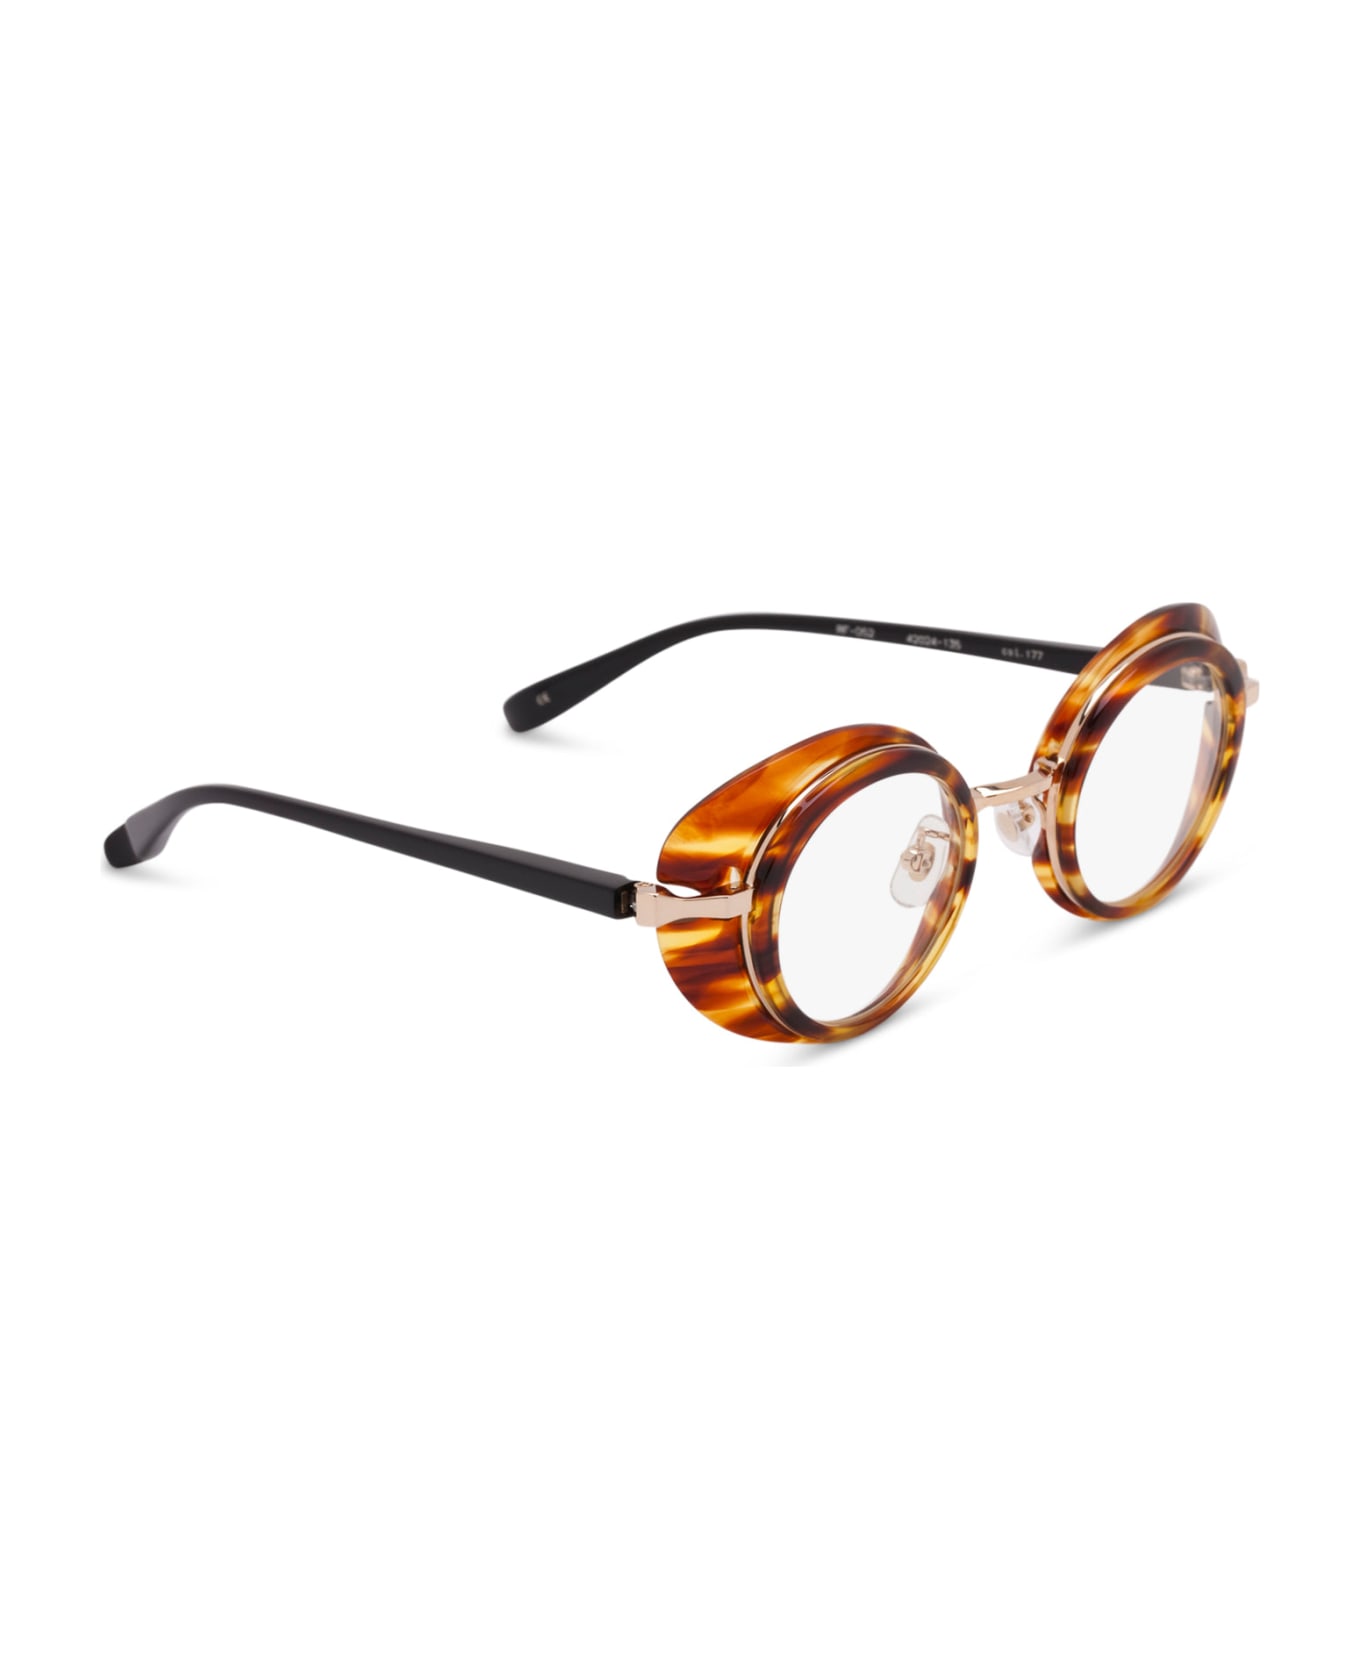 FACTORY900 Rf 052-177 Glasses - havana/black/gold